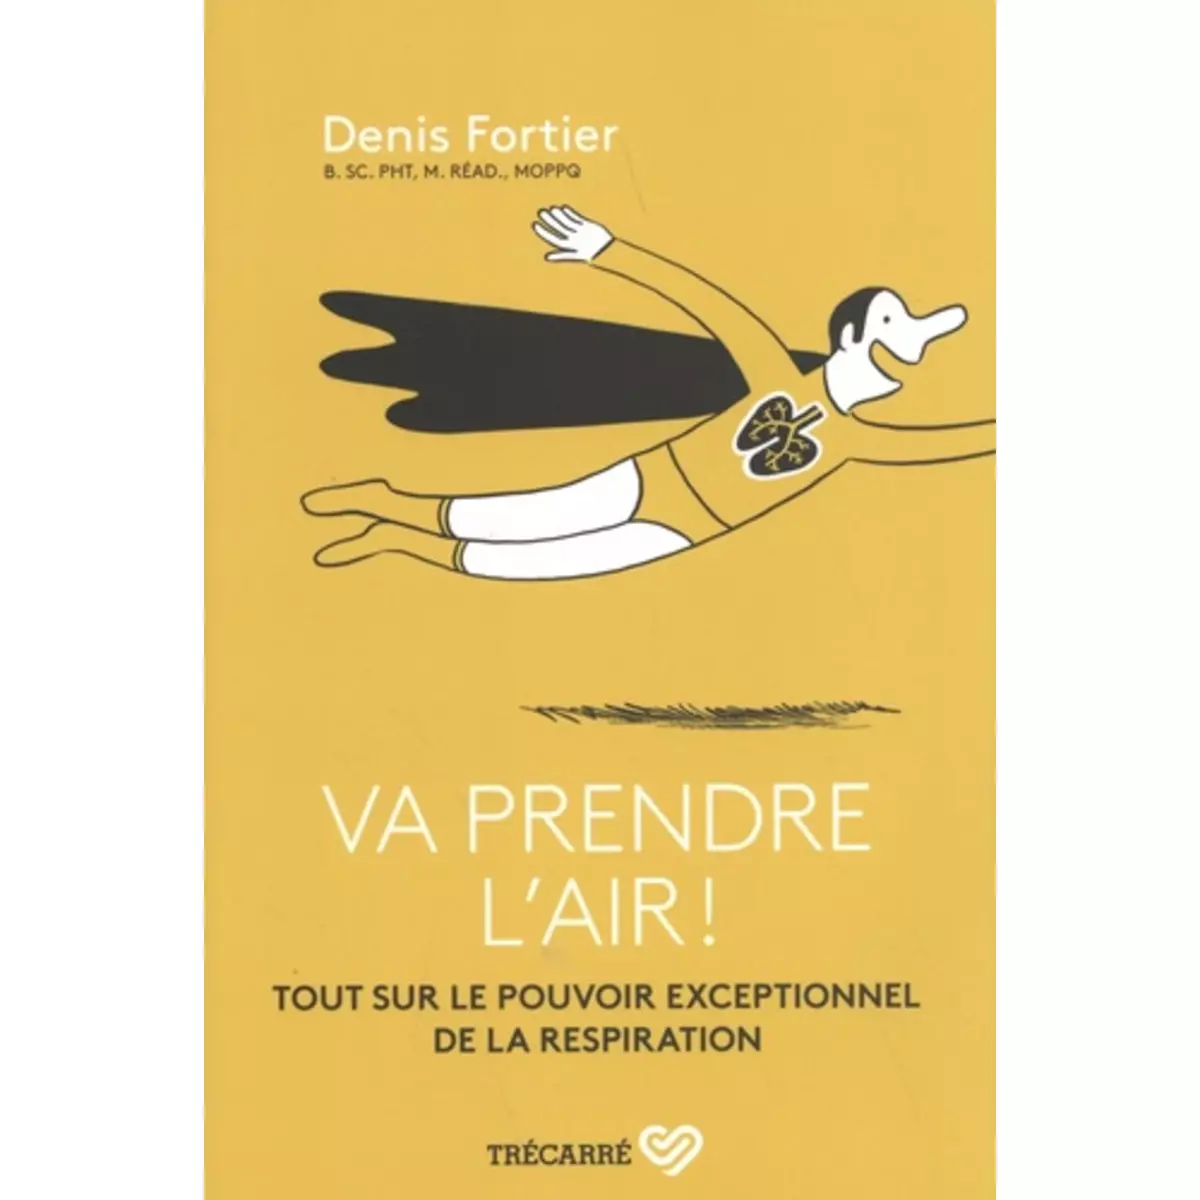  VA PRENDRE L'AIR ! TOUT SUR LE POUVOIR EXCEPTIONNEL DE LA RESPIRATION, Fortier Denis